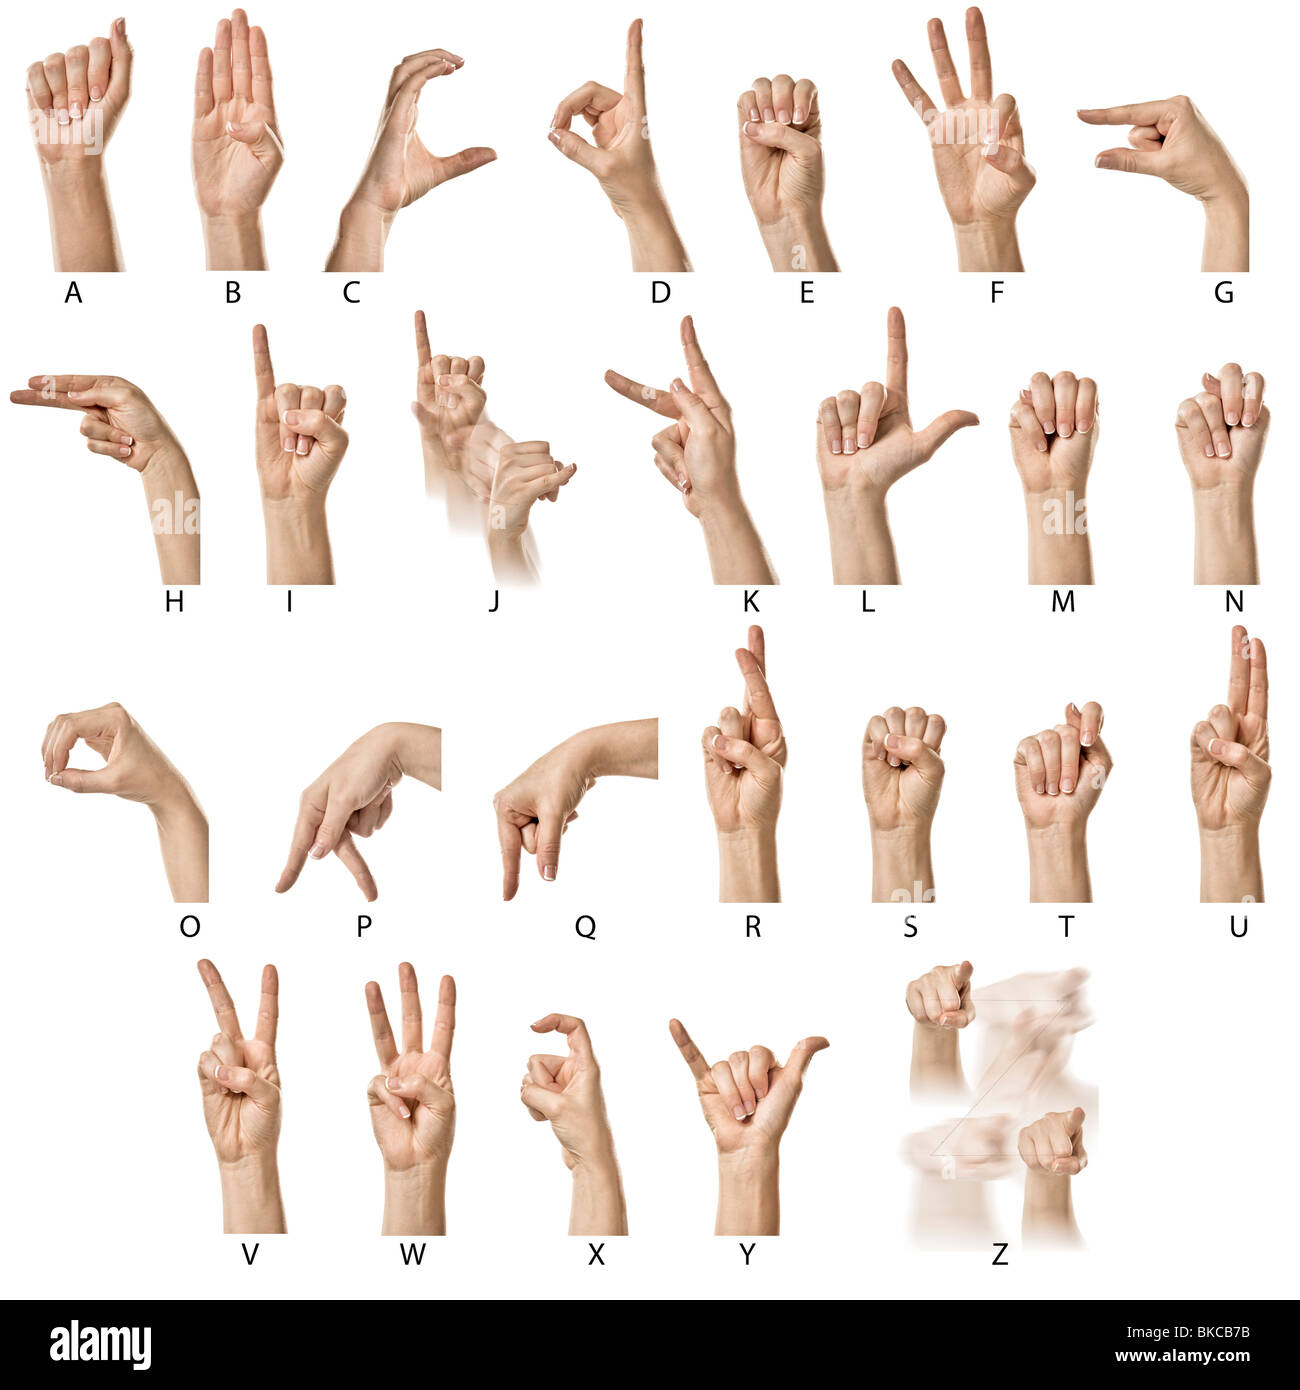 Female hands finger spelling the ASL alphabet Stock Photo - Alamy